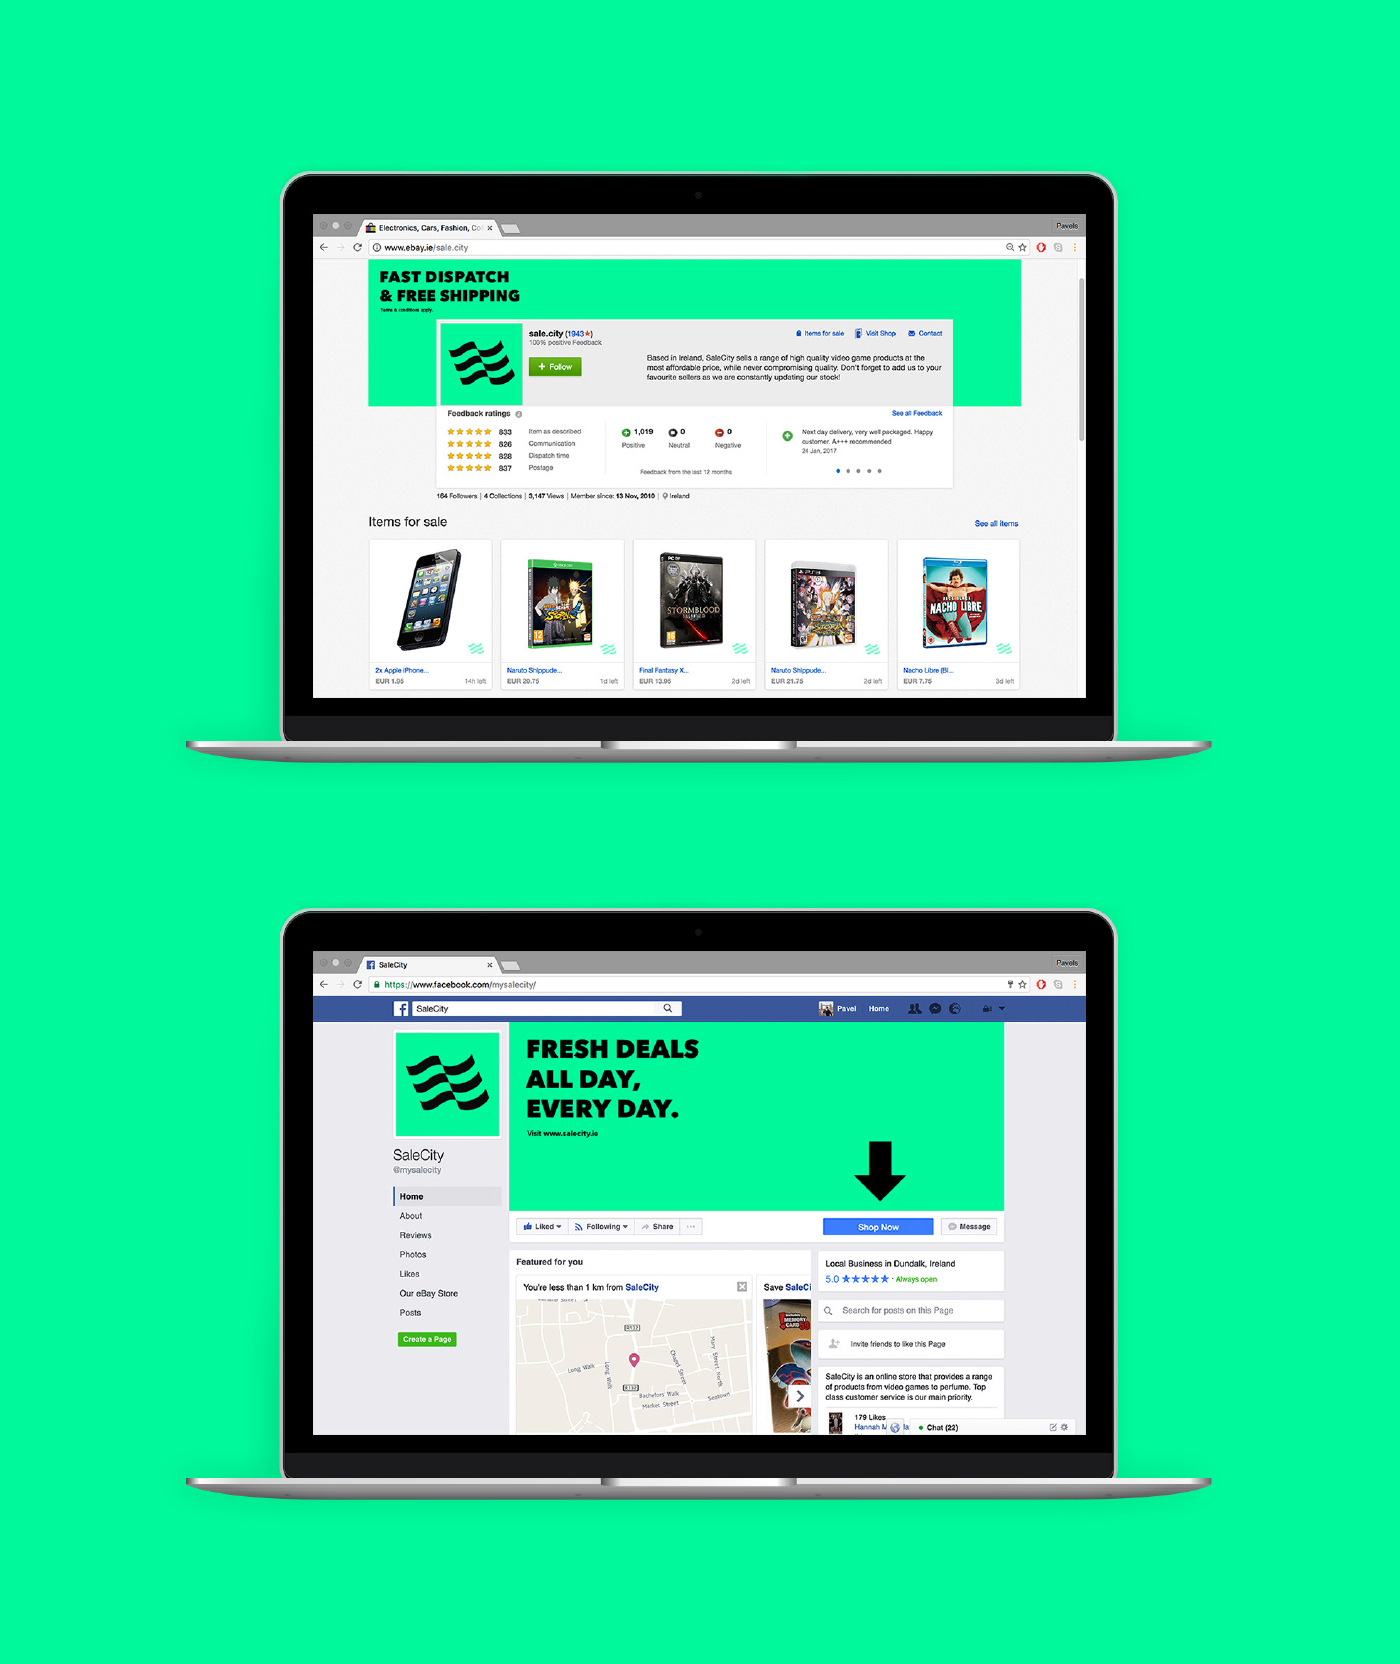 e-bay facebook flag green online shop icons avenir sale city